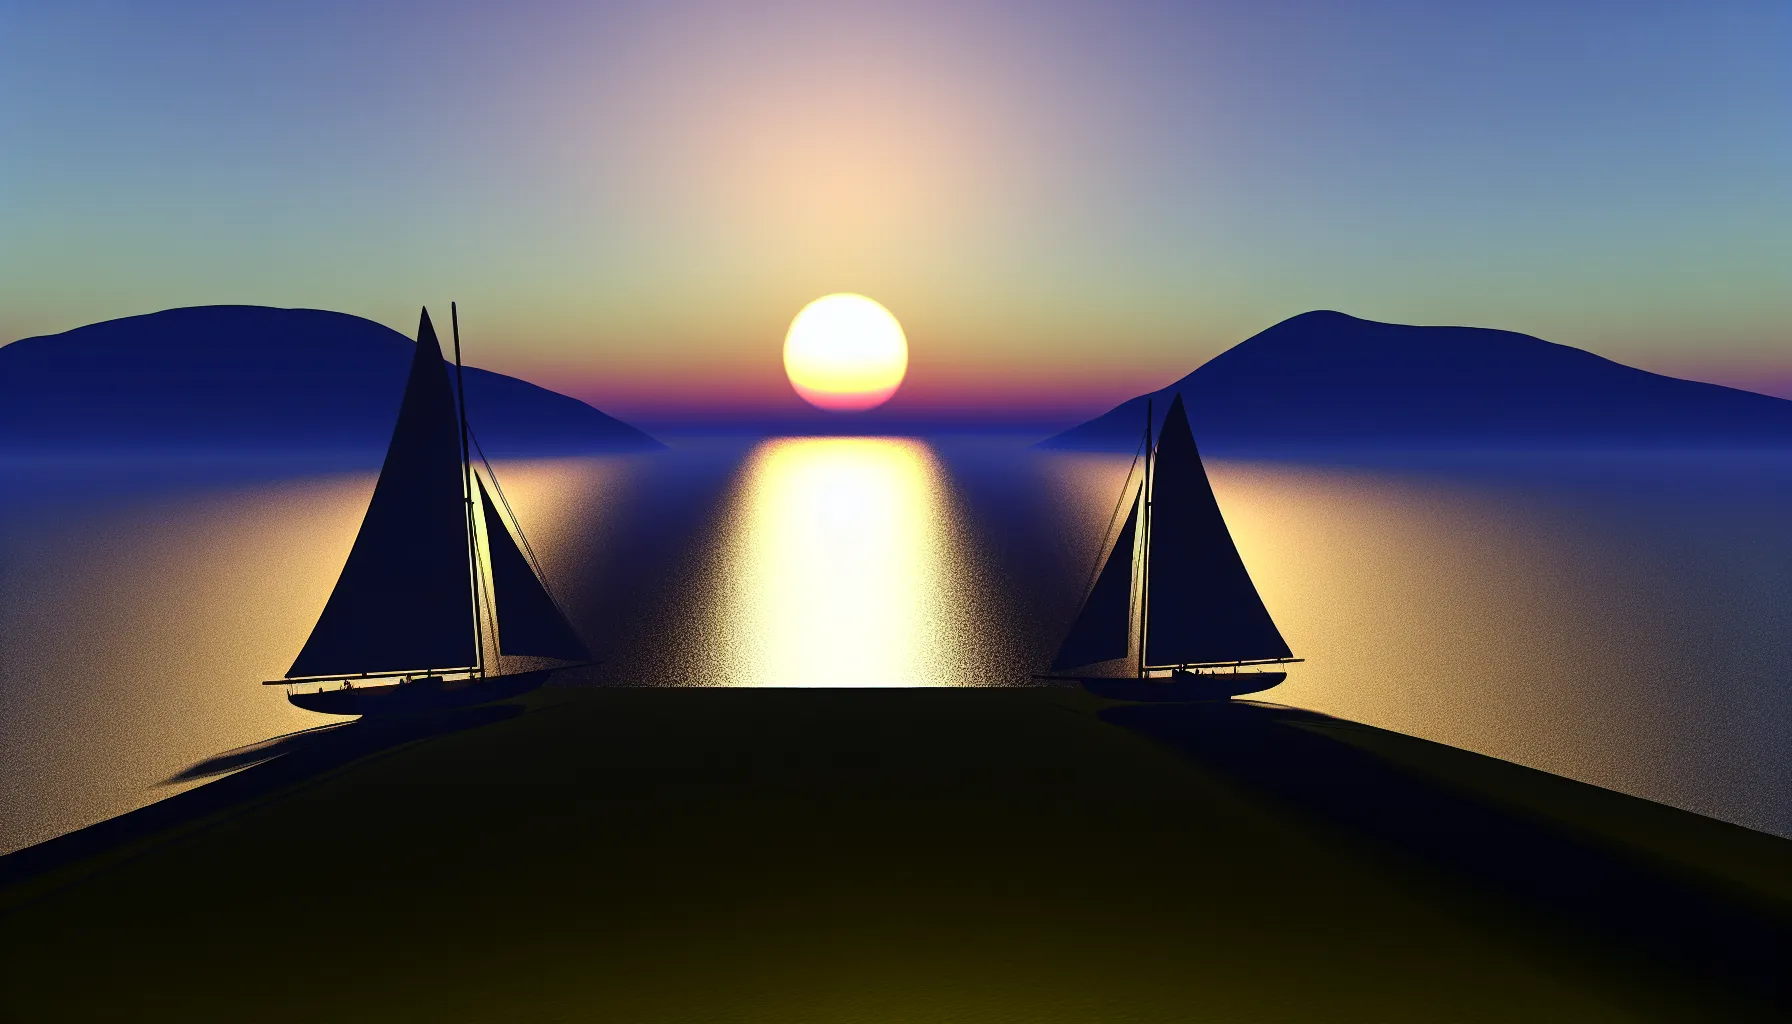 Sailboats at dawn symbolizing new beginnings